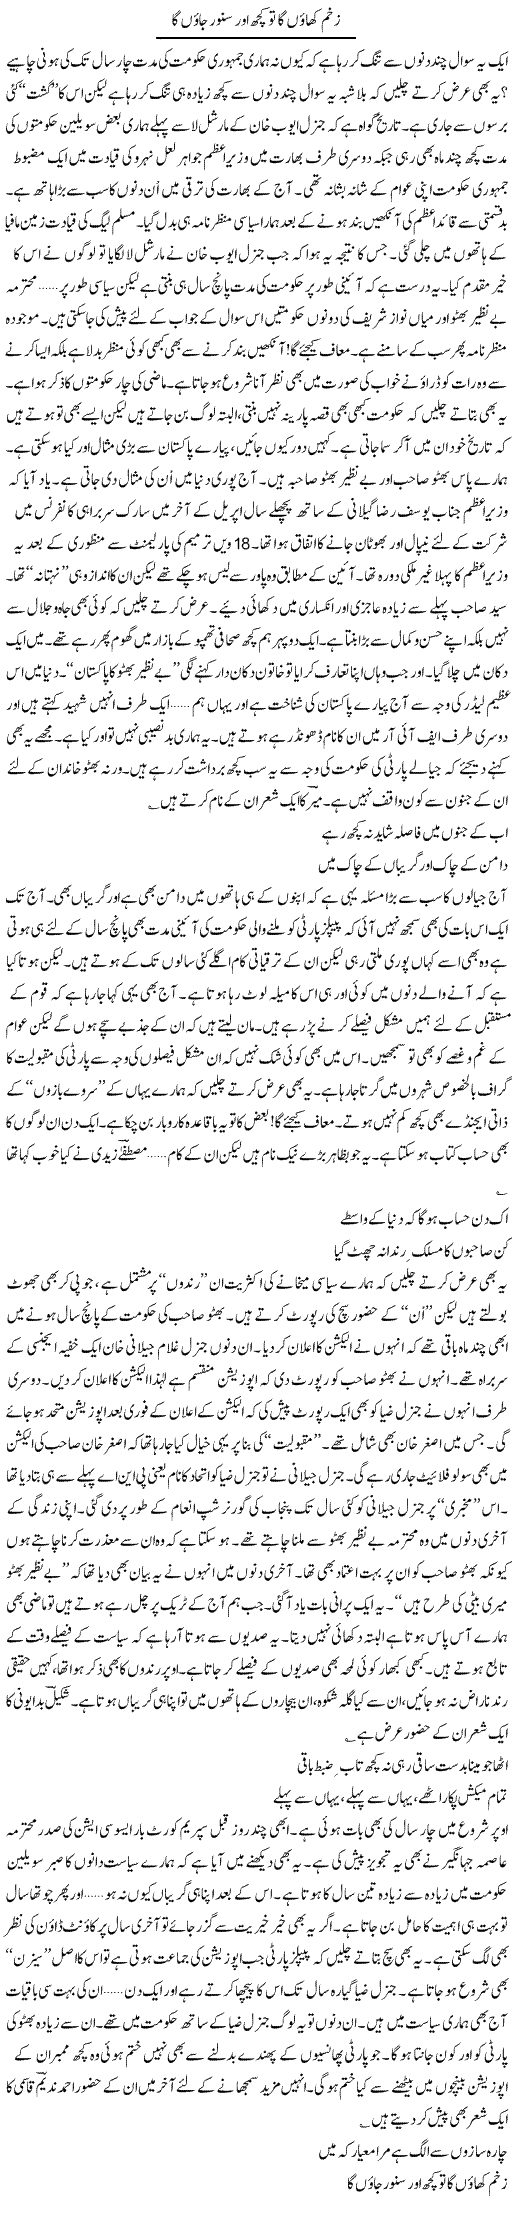 Bhutto Shaheed Express Column Ijaz Hafeez 13 January 2011